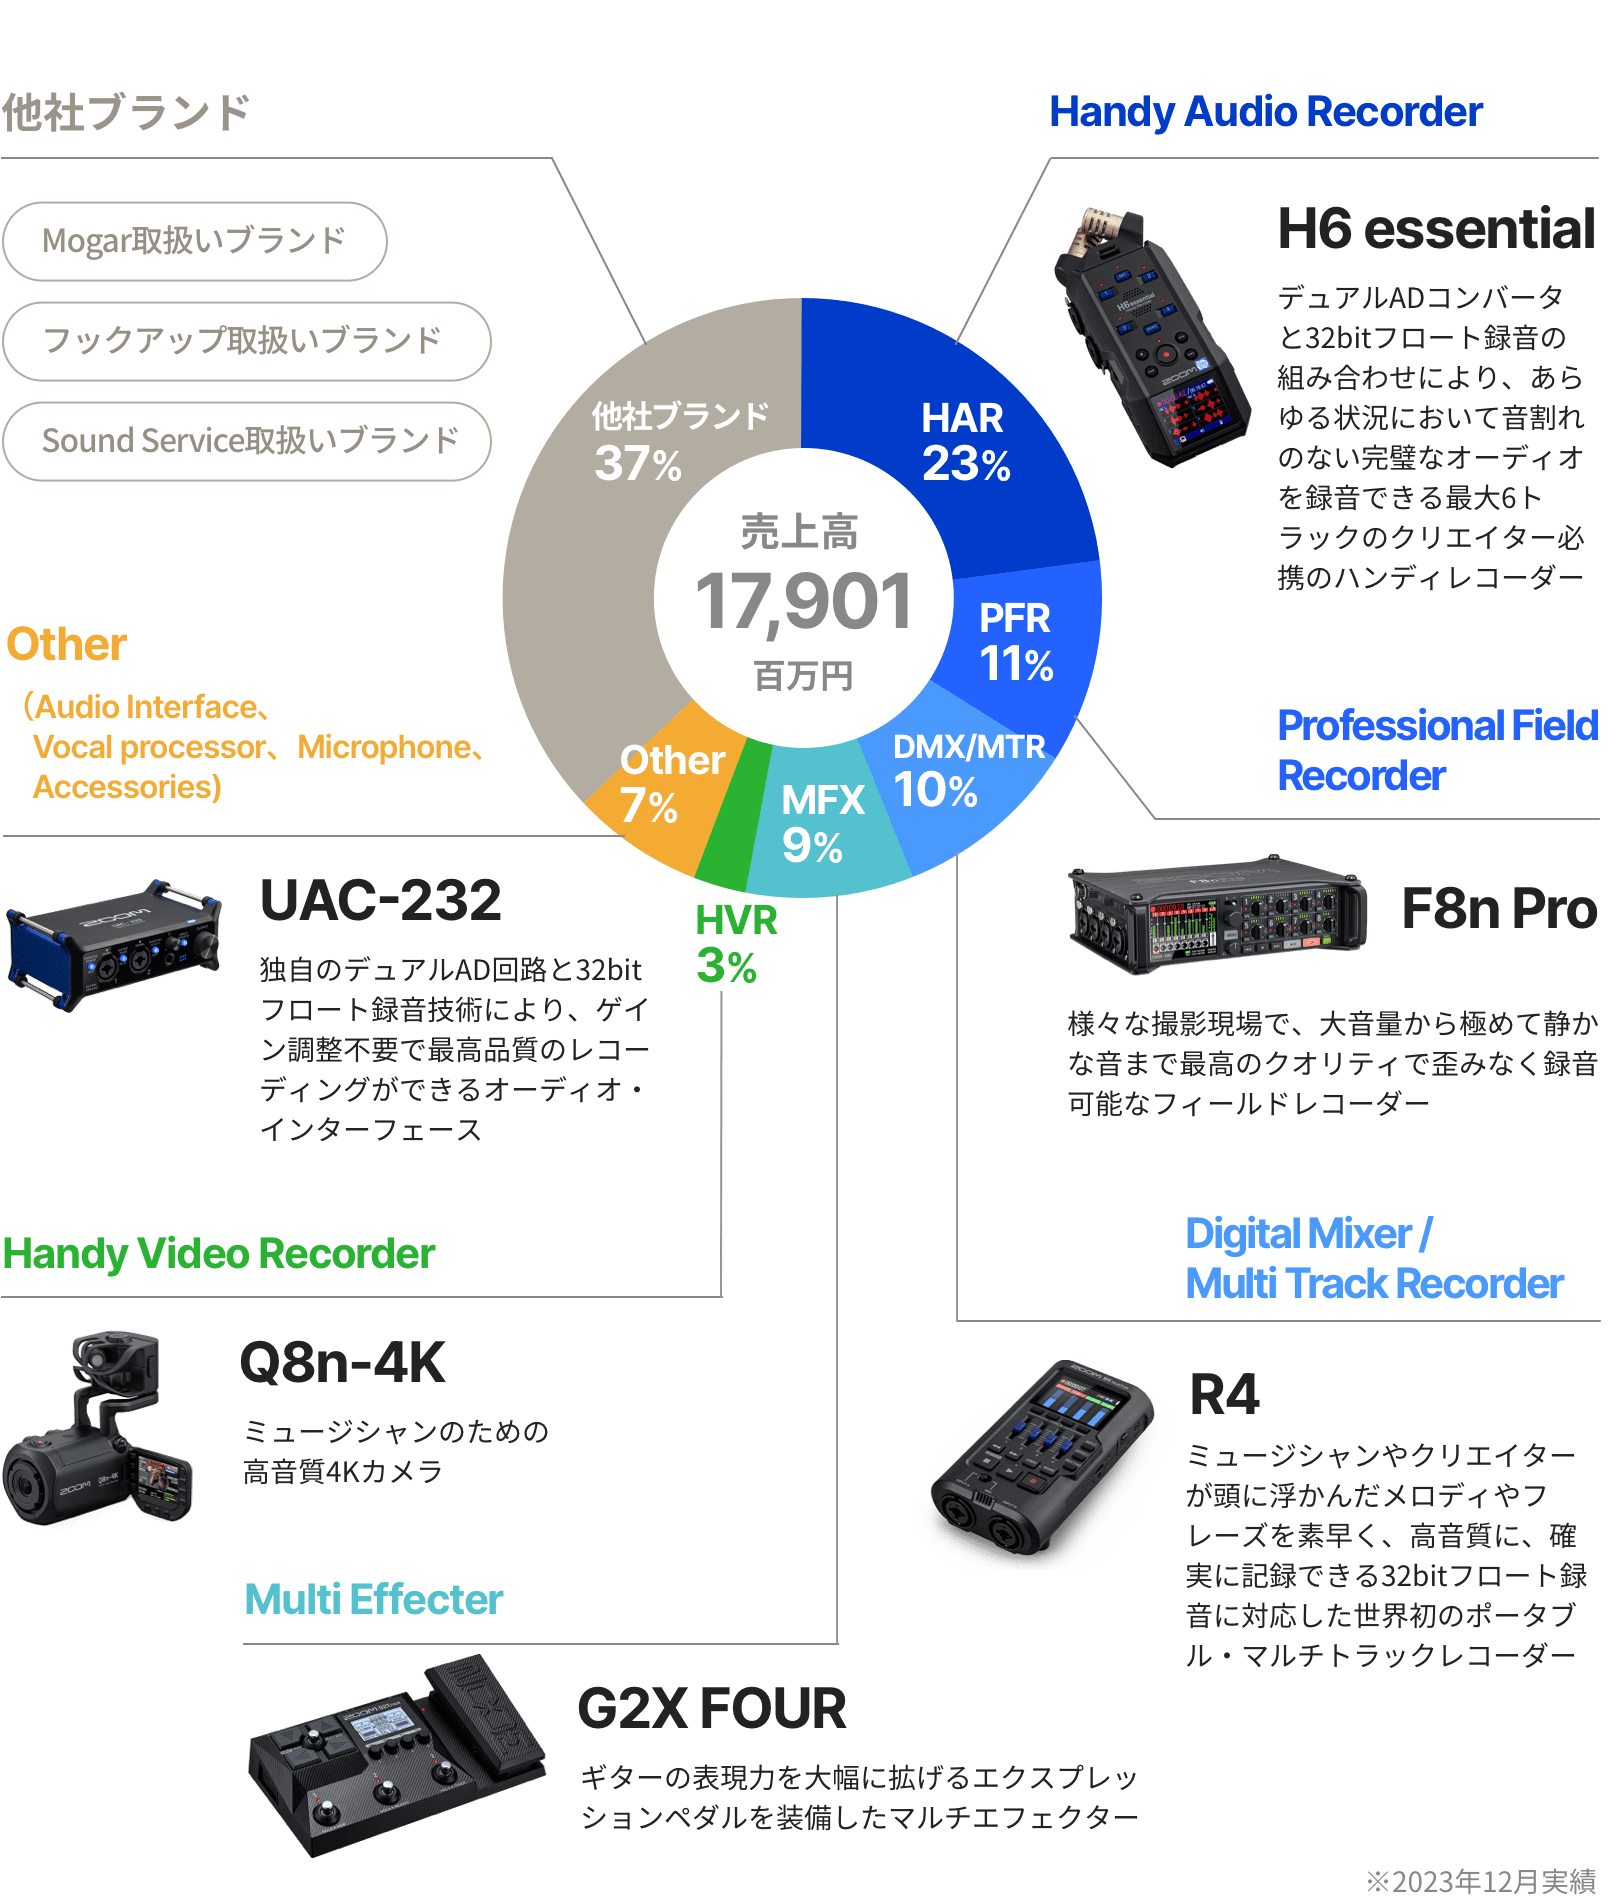 製品カテゴリー別売上高構成比 円グラフ。売上高17,901百万円。ハンディオーディオレコーダー（HAR）23％、プロフェッショナルフィールドレコーダー（PFR）11％、デジタルミキサー/マルチトラックレコーダー（DMX/MTR）10％・マルチエフェクター（MFX）9％・ハンディビデオレコーダー（HVR）3％・その他7％、他社ブランド（Mogar取扱いブランド、フックアップ取扱いブランド、Sound Service取扱いブランド）37％。※2023年12月実績